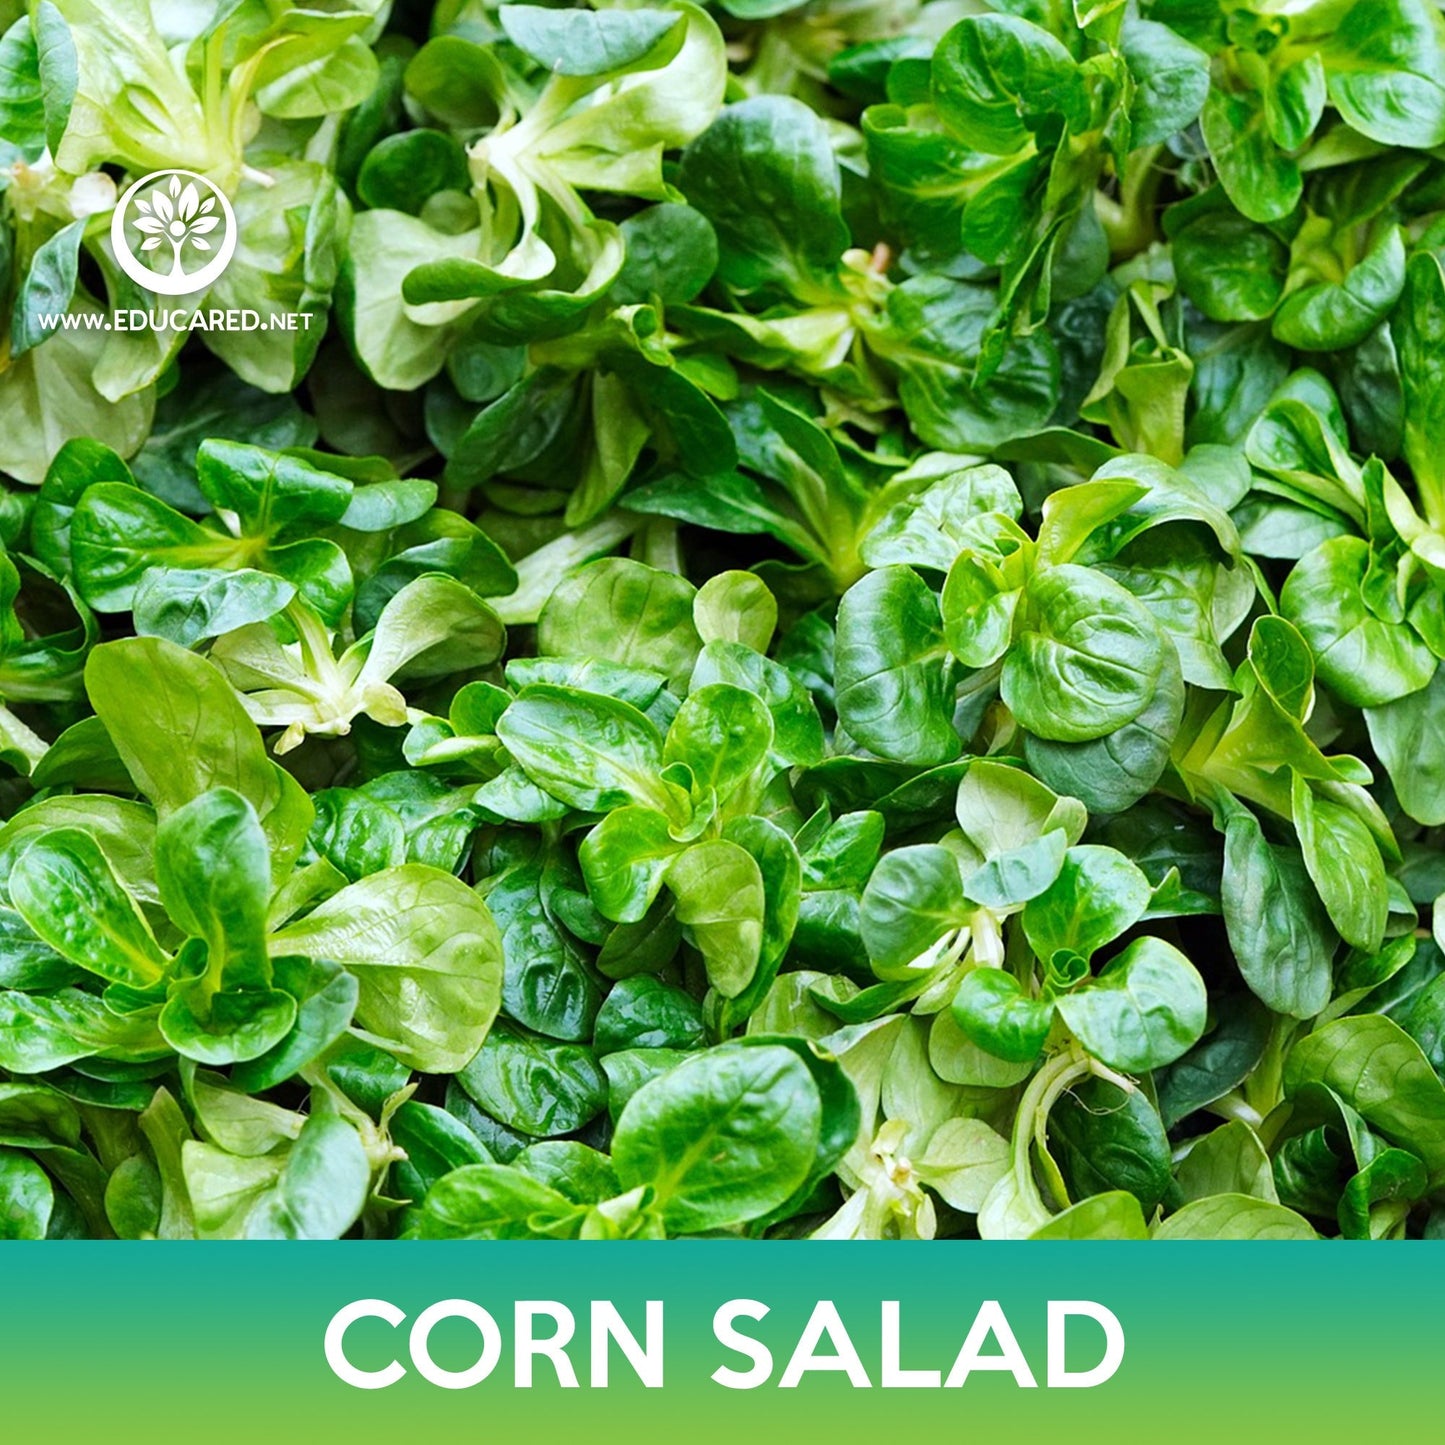 Corn Salad Seeds, Lamb's lettuce, Valerianella locusta